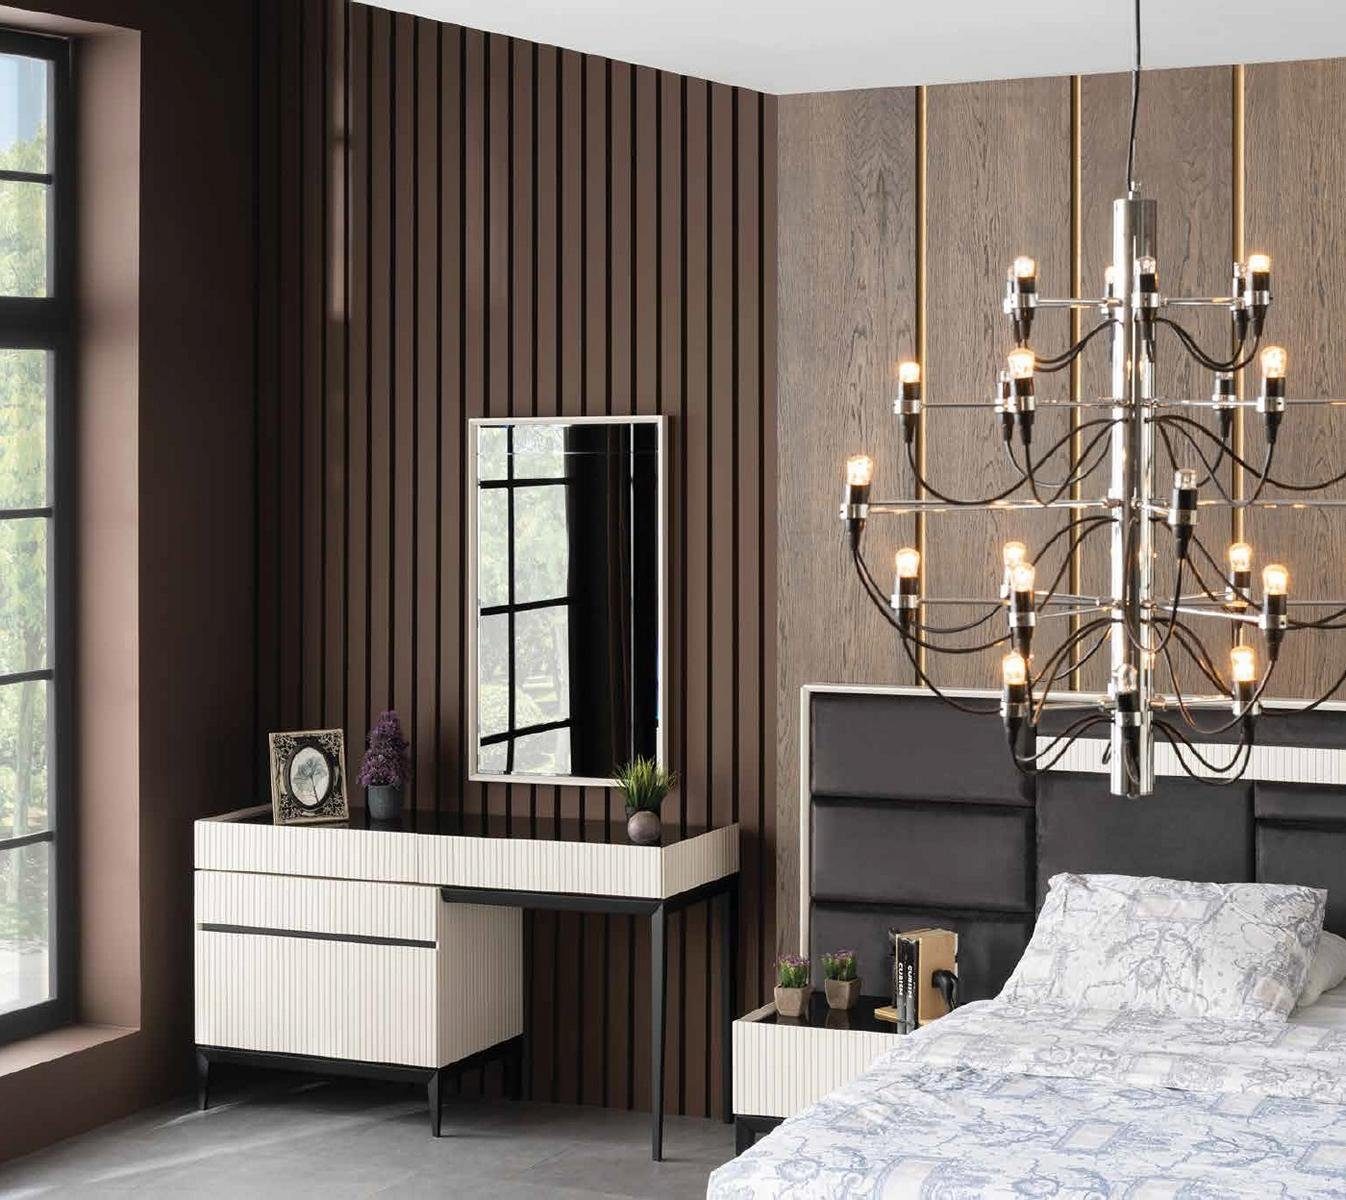 JVmoebel Schminktisch, Schminktisch Spiegel Luxus Konsole Kommode Schlafzimmer Holz Modern